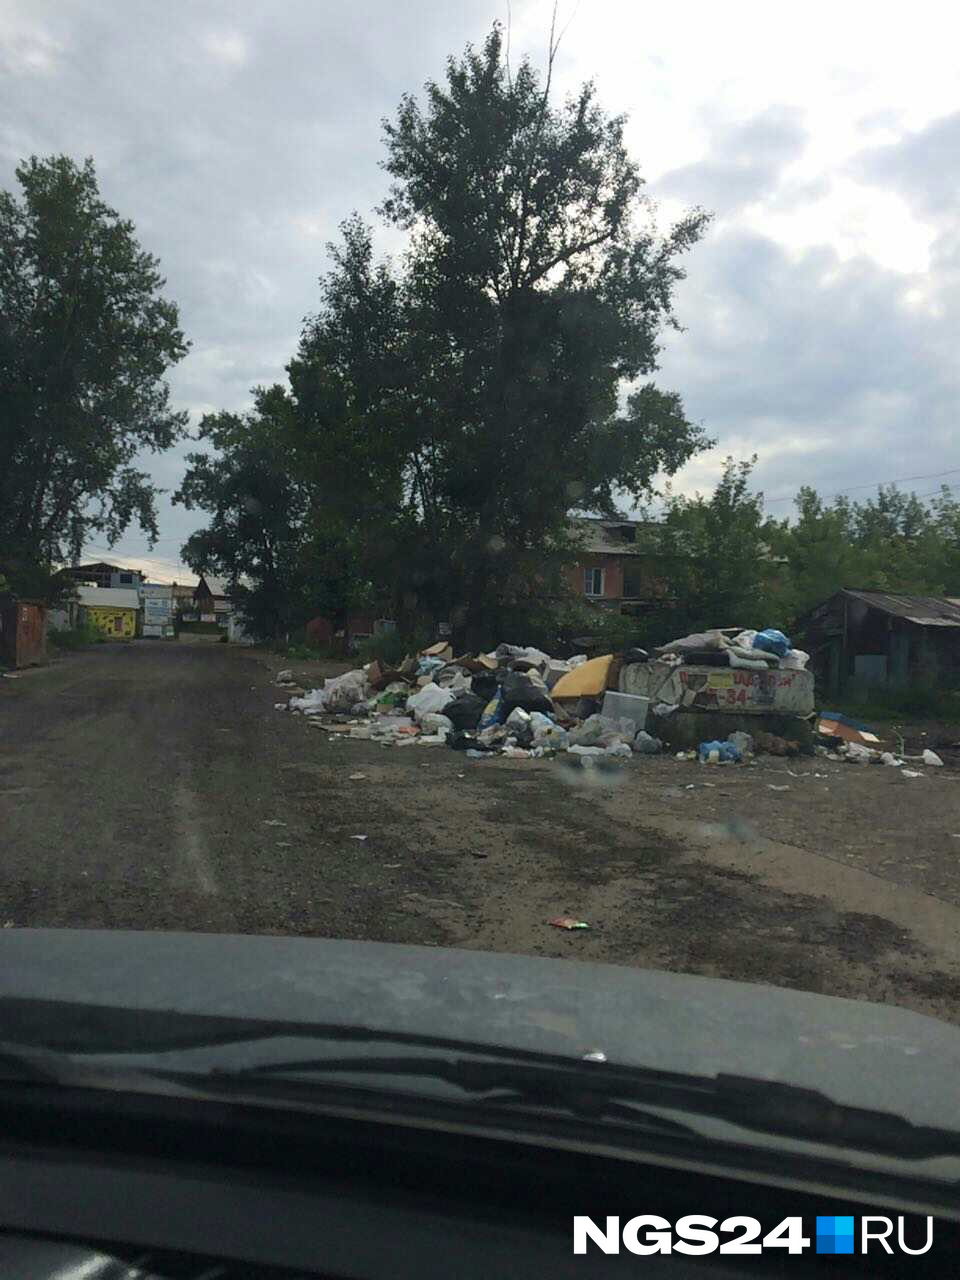 Управляет домами МУК «Красноярская», которая пообещала провести проверку — почему мусор до сих пор не убран